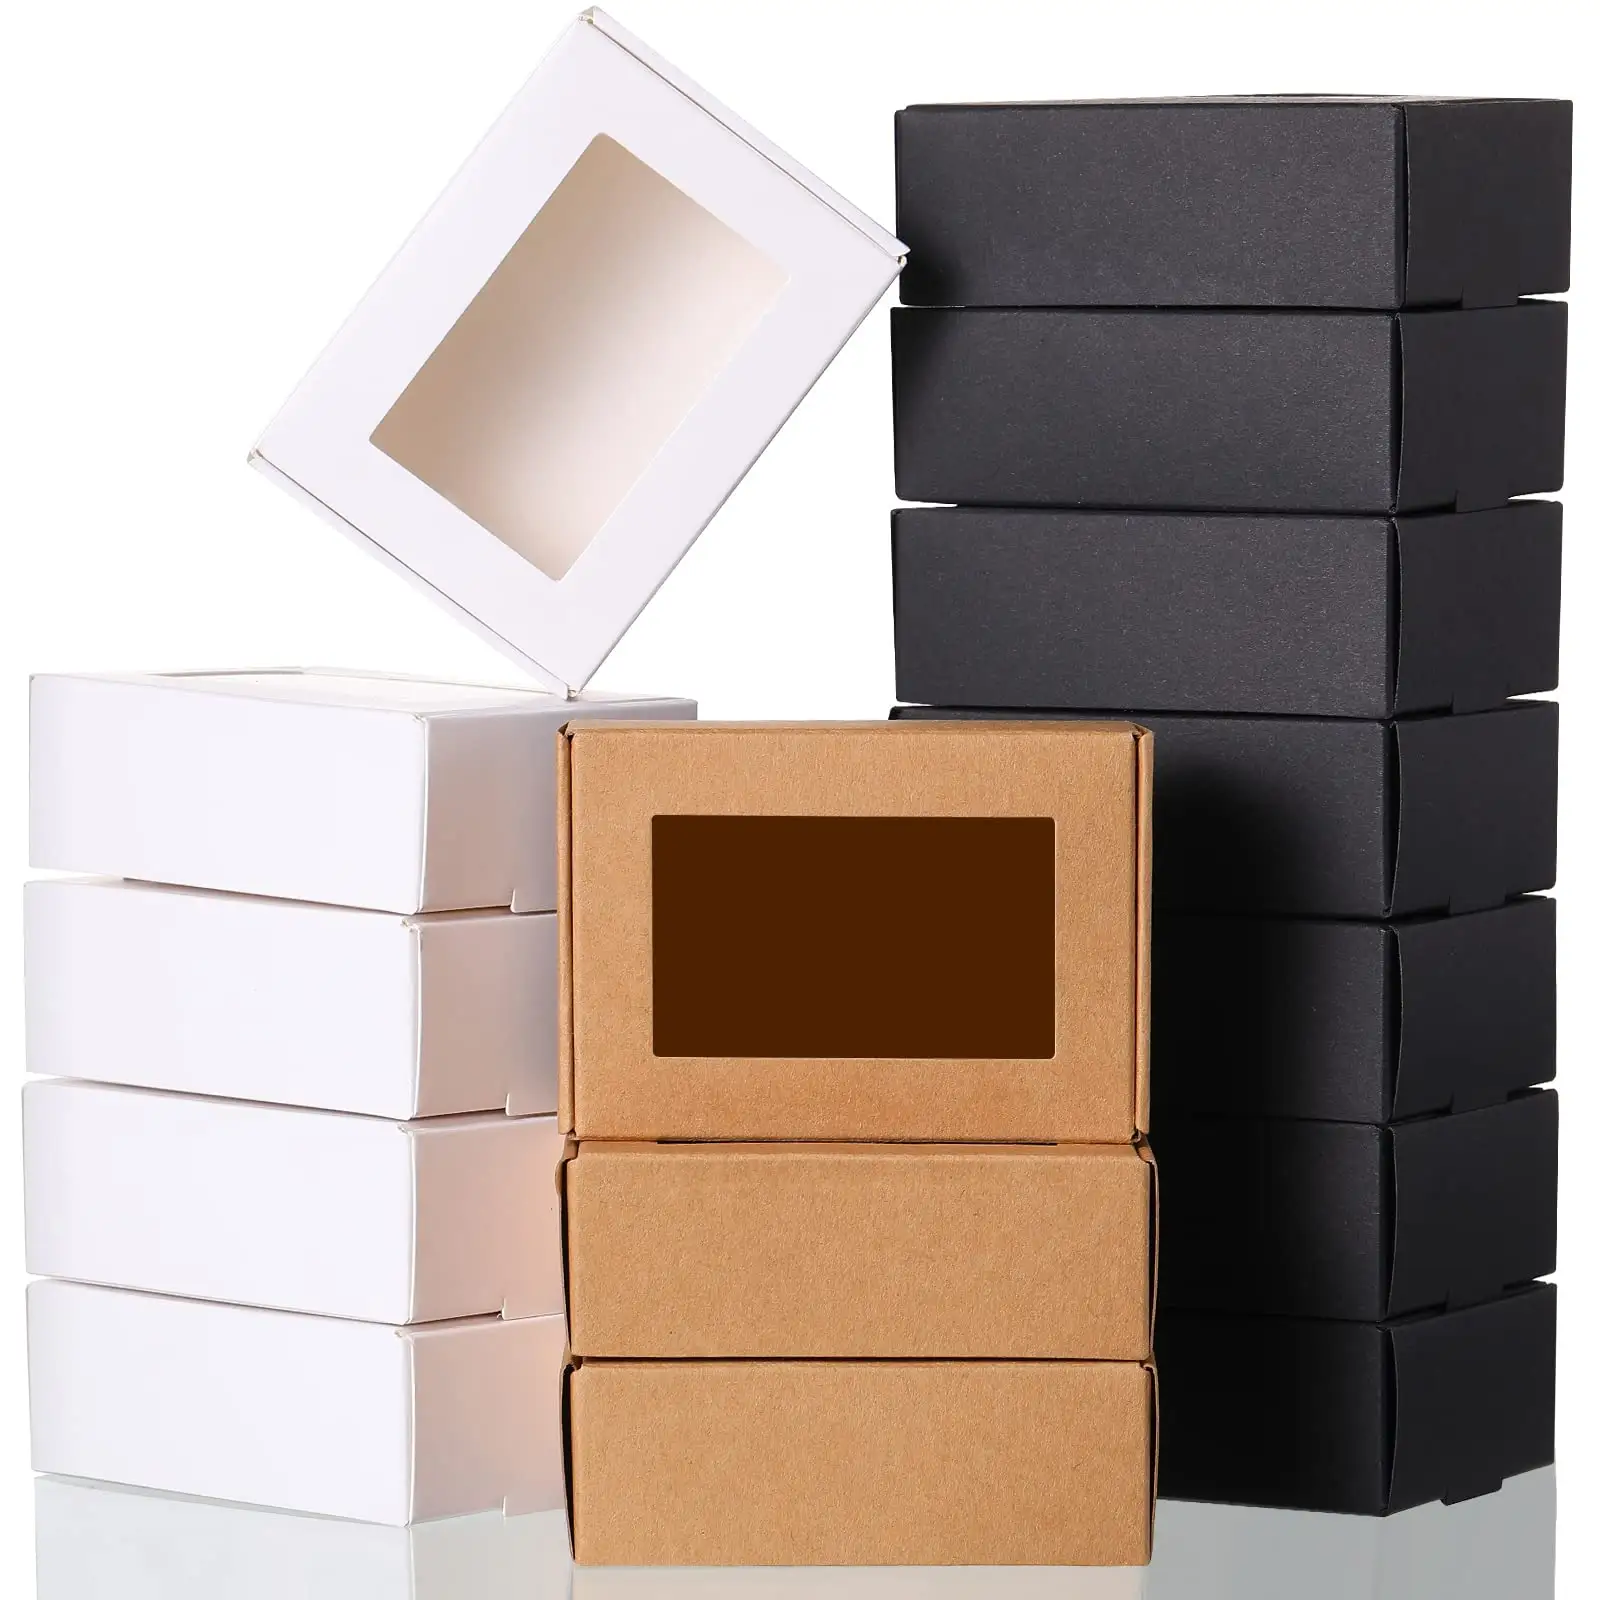 กล่องของขวัญกระดาษคราฟท์ขนาดเล็กสีขาวพับได้พร้อมบรรจุภัณฑ์แบบหน้าต่างสำหรับปัจจุบันธุรกิจขนาดเล็ก